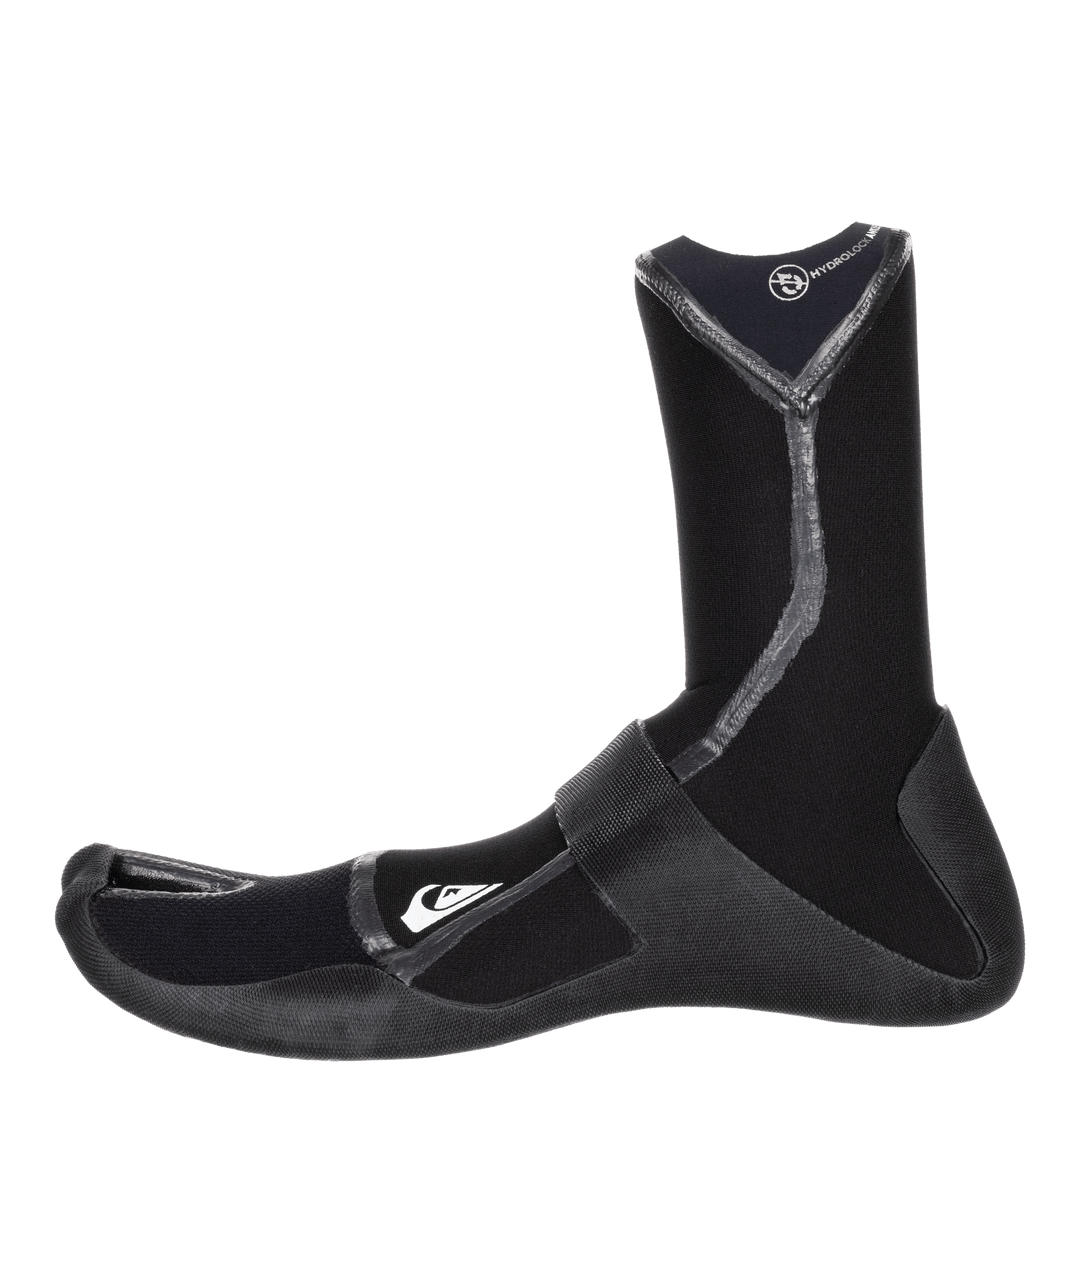 Marathon Sessions 3mm Split Toe Wetsuit Boots - Black